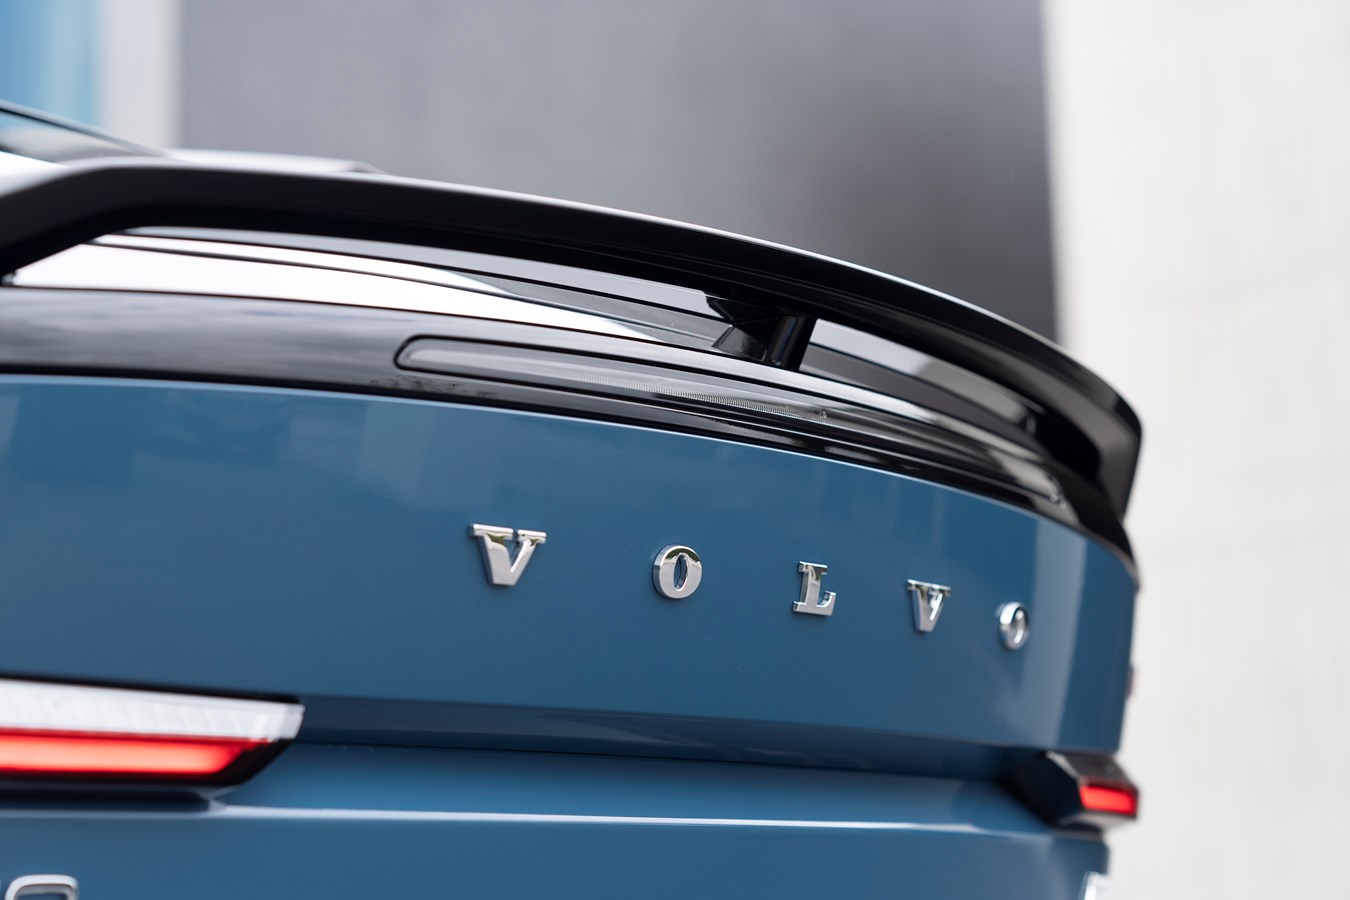 Бывший завод Volvo возобновит производство грузовых автомобилей